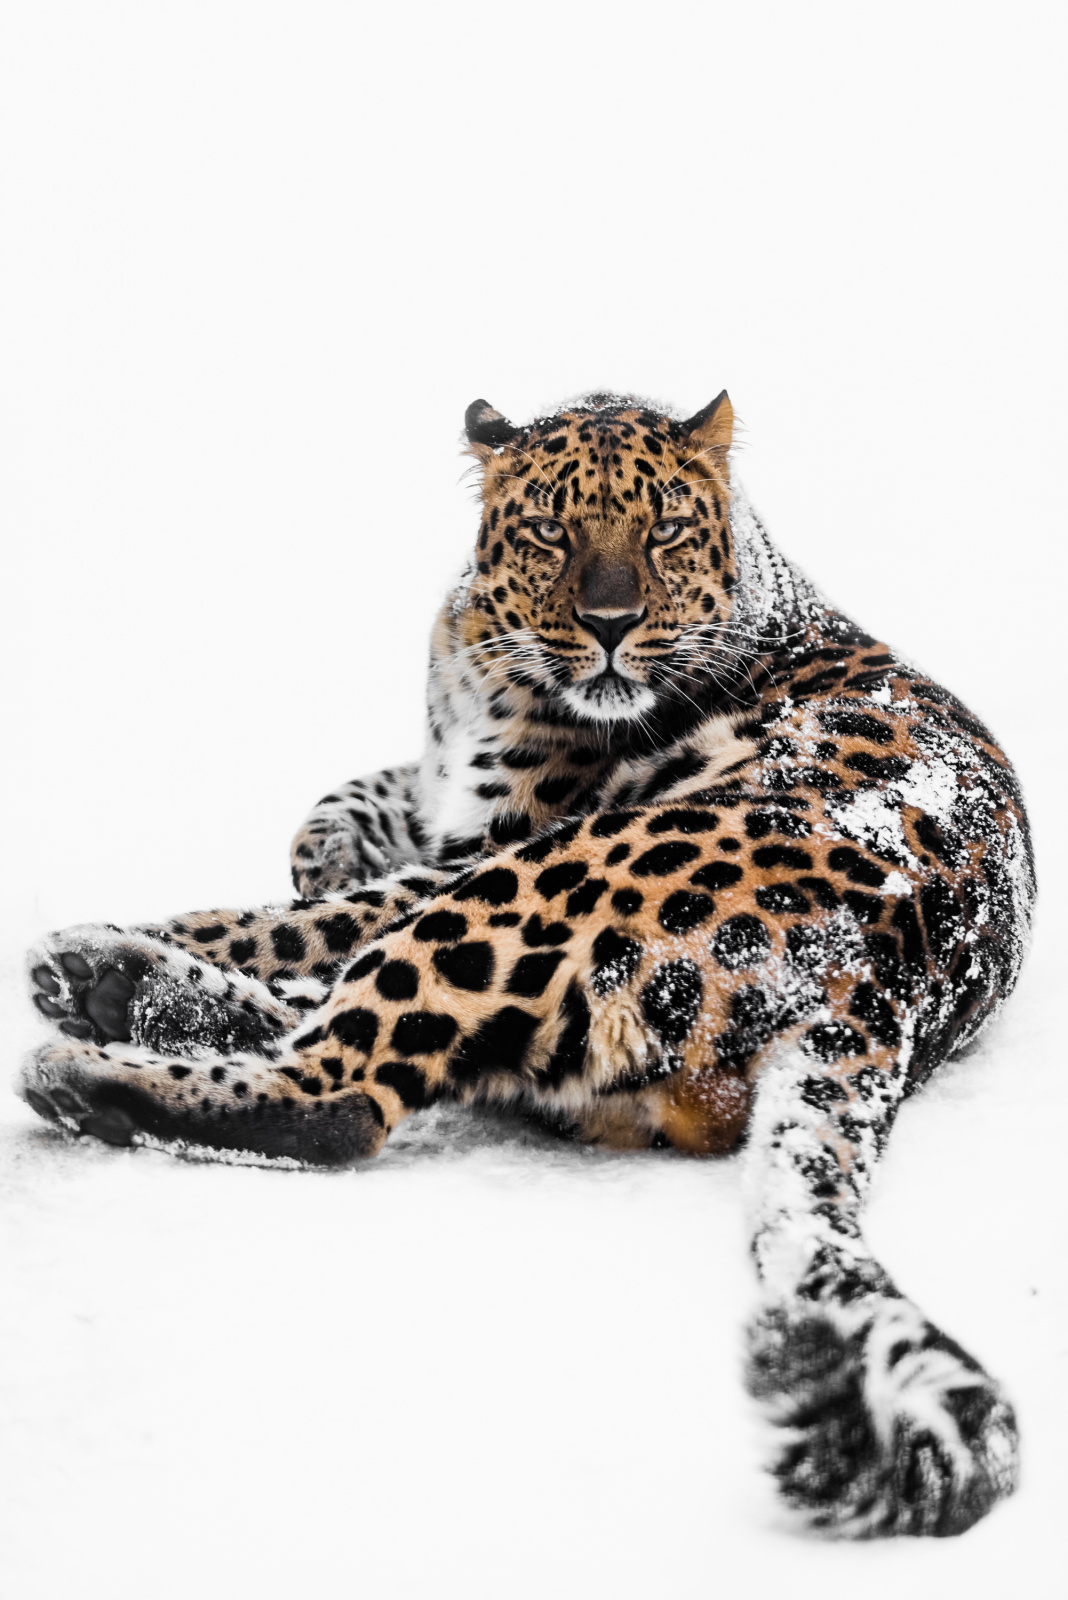 Дальневосточный леопард. Фото: Михаил Колесников